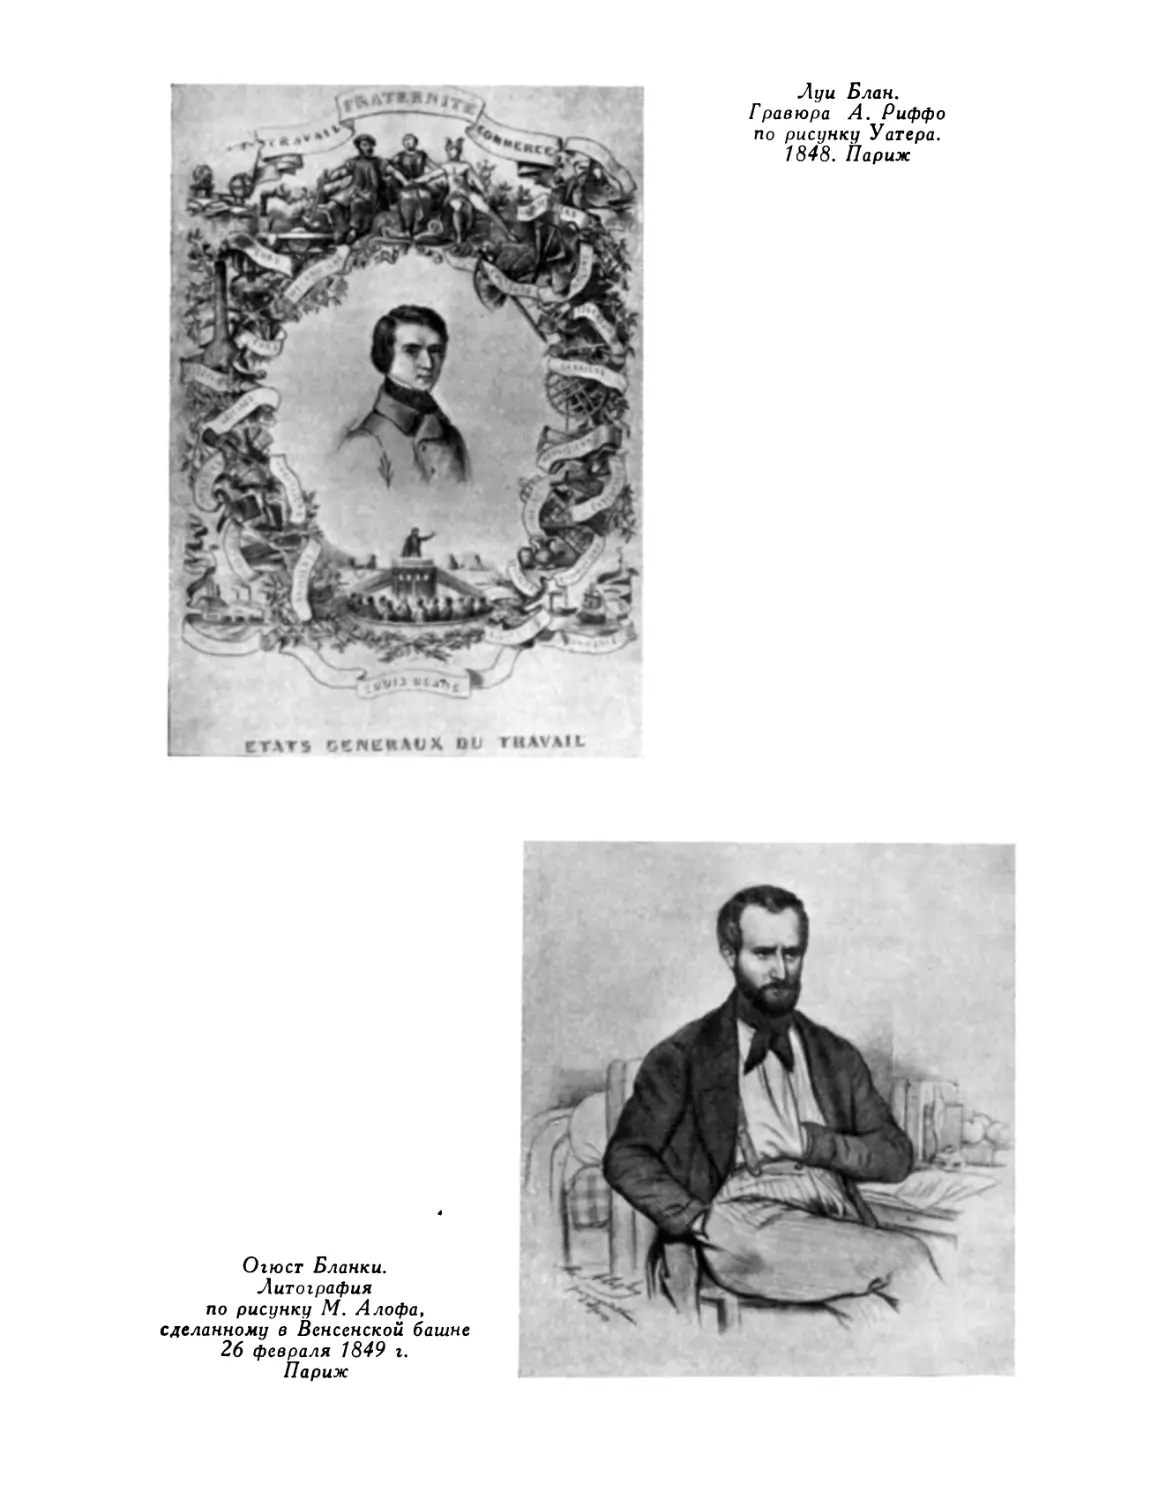 Луи Блан. Гравюра А. Риффо по рисунку Уатера. 1848; О. Бланки. Литография по рисунку М. Алофа